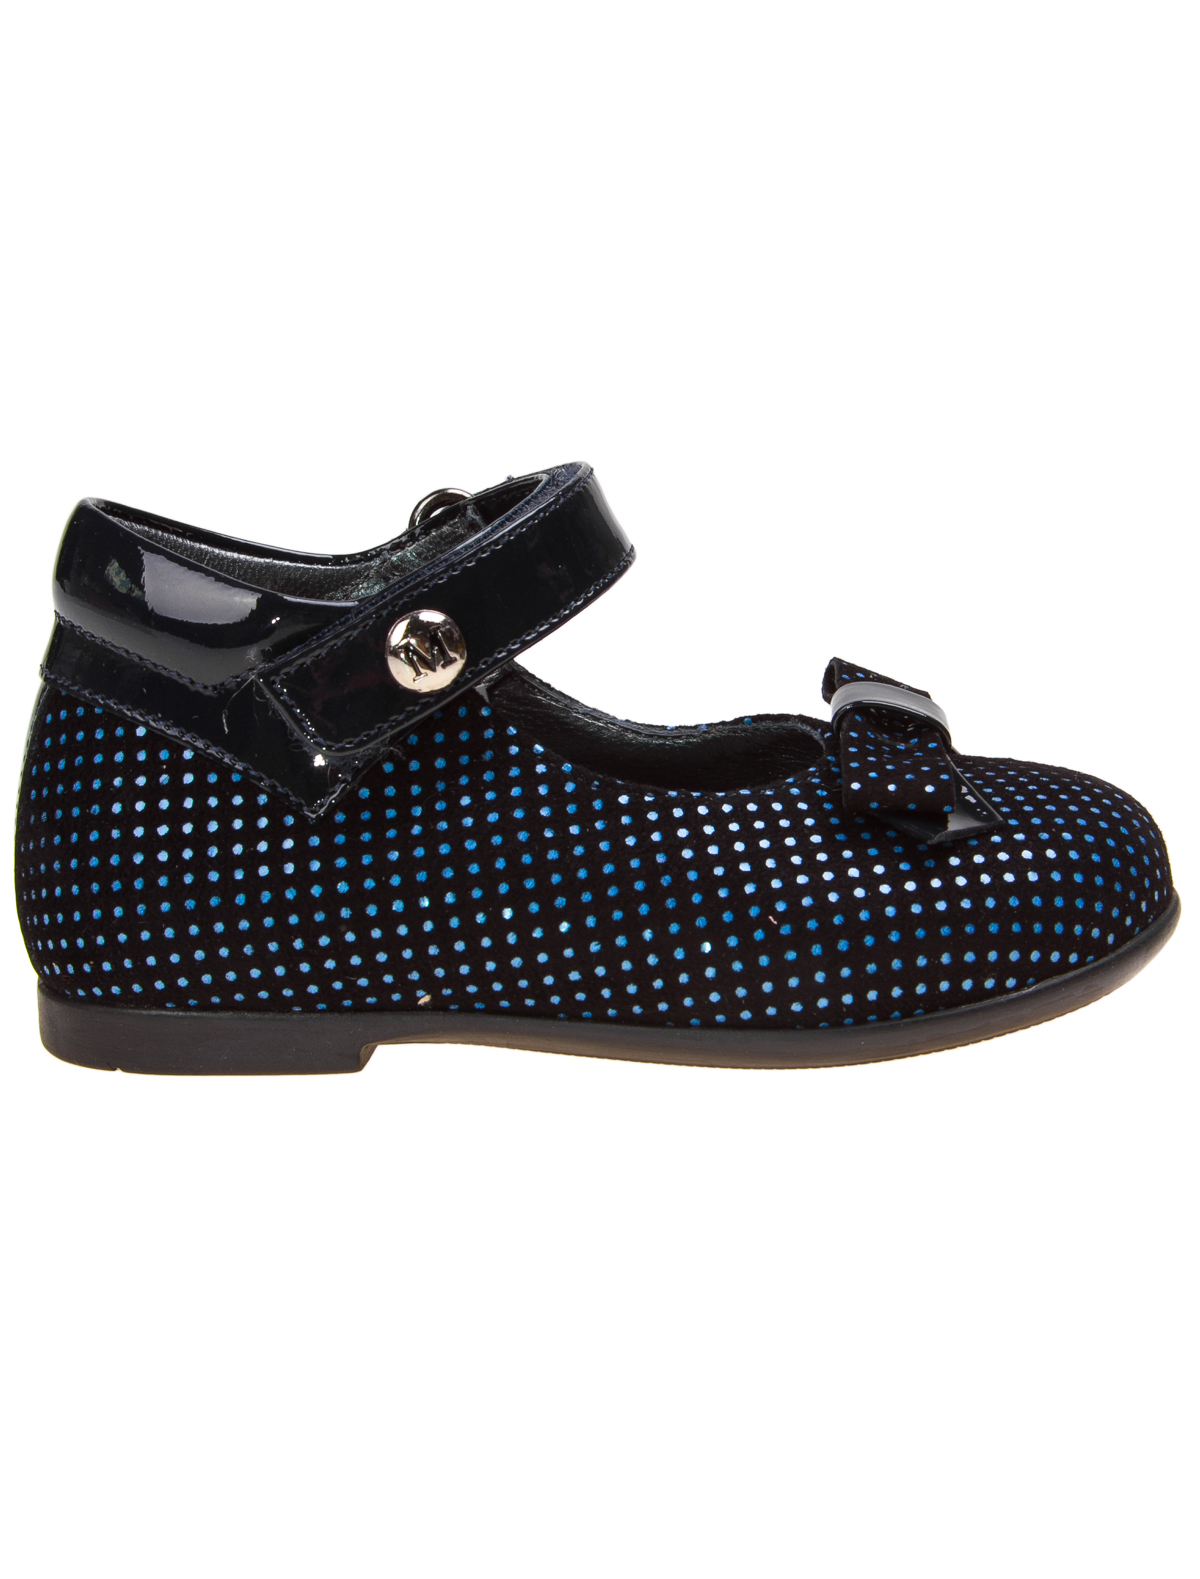 Туфли Missouri 1914287, цвет черный, размер 20 2013709780027 - фото 2